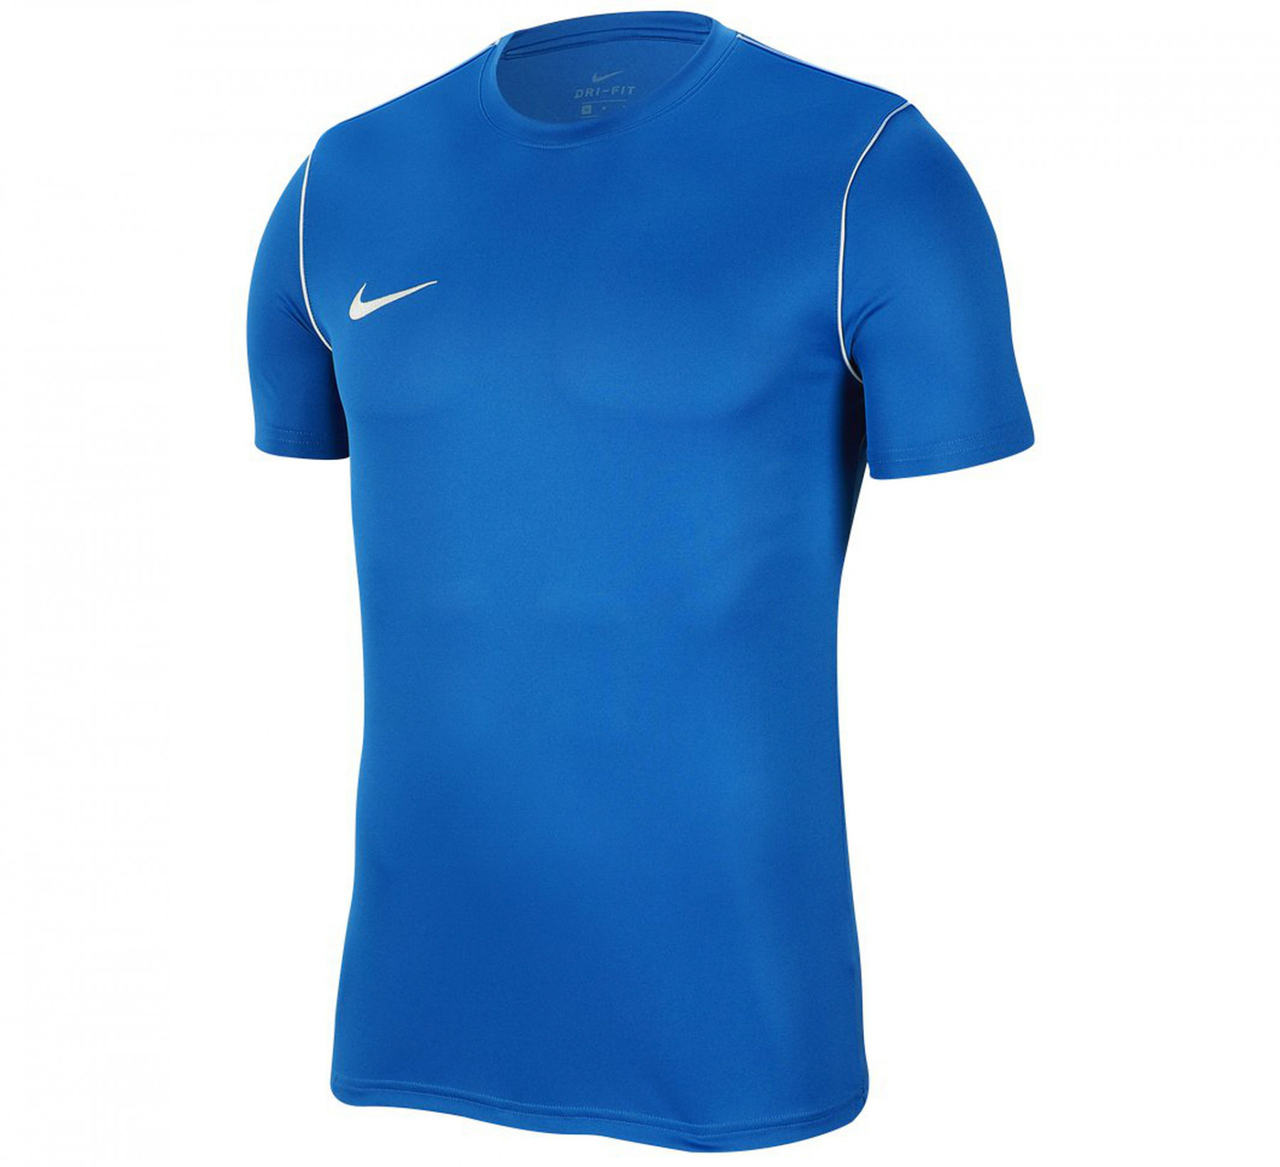 Besmettelijk prijs uitvinding Nike sportshirt bedrukken - Eigen ontwerp en snel geleverd!